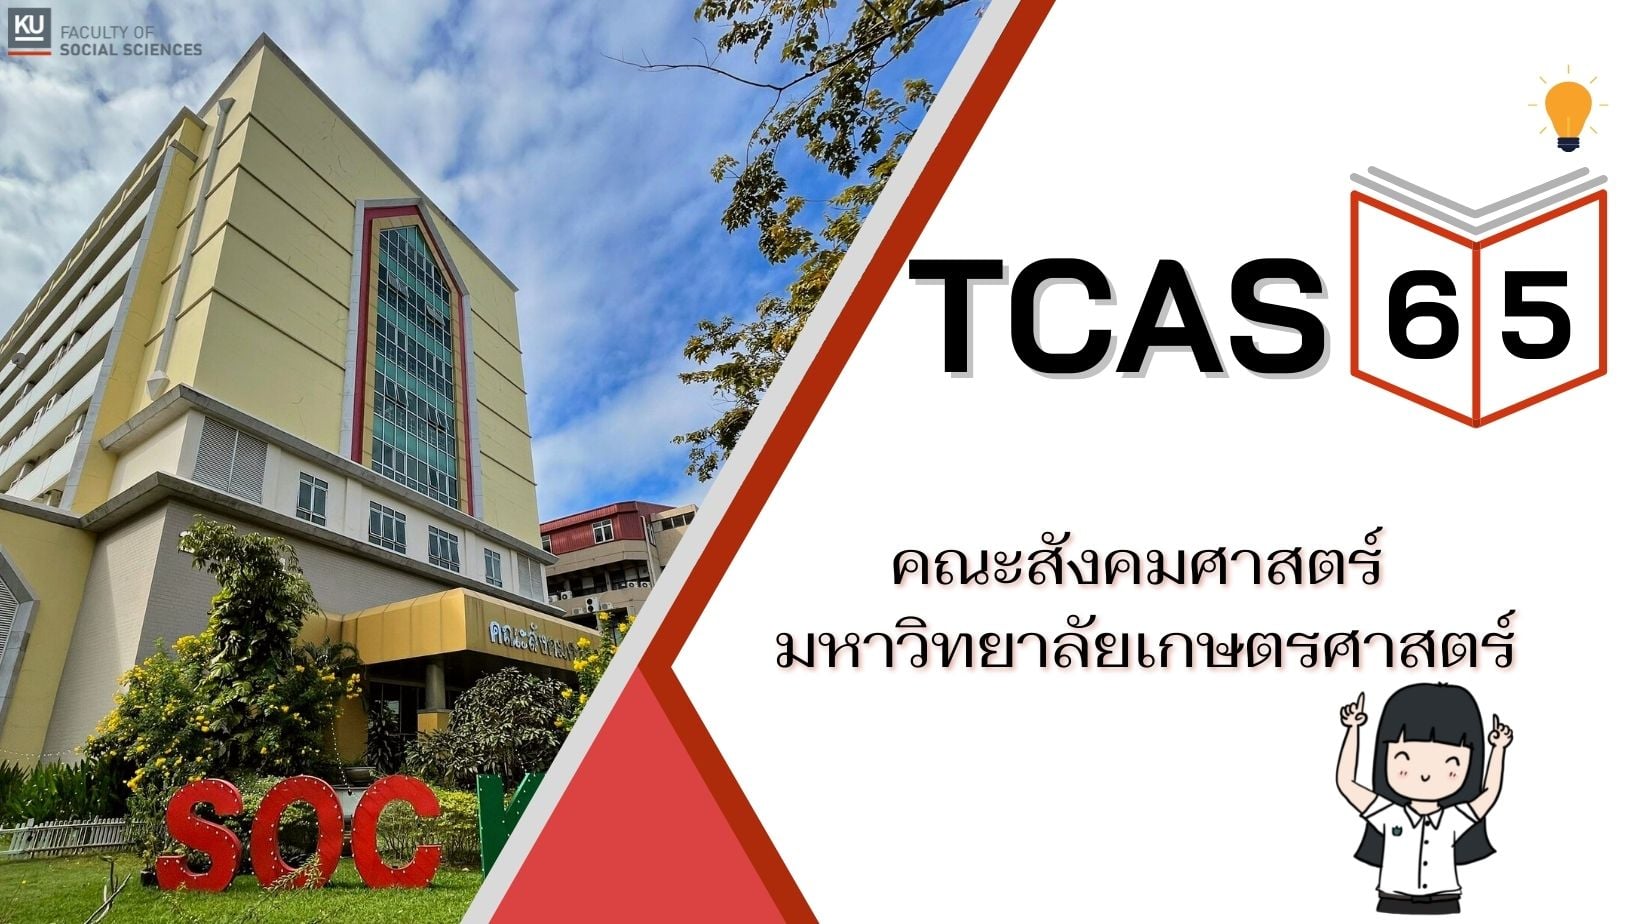 การรับสมัครเข้าศึกษาต่อหลักสูตรเอเชียตะวันออกเฉียงใต้ศึกษา KU-TCAS 2565